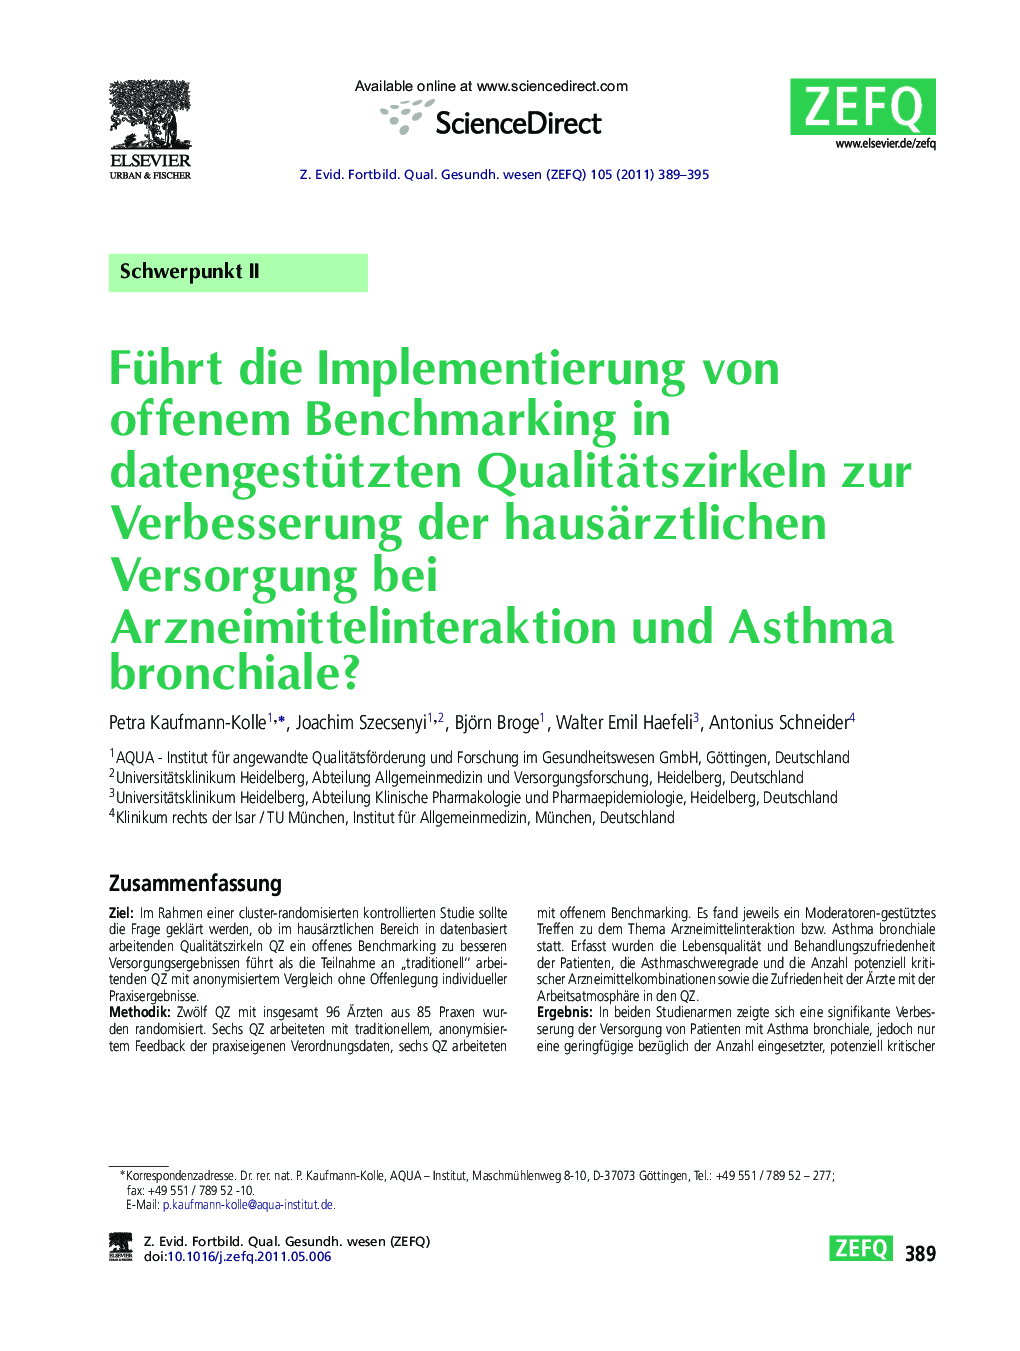 Führt die Implementierung von offenem Benchmarking in datengestützten Qualitätszirkeln zur Verbesserung der hausärztlichen Versorgung bei Arzneimittelinteraktion und Asthma bronchiale?